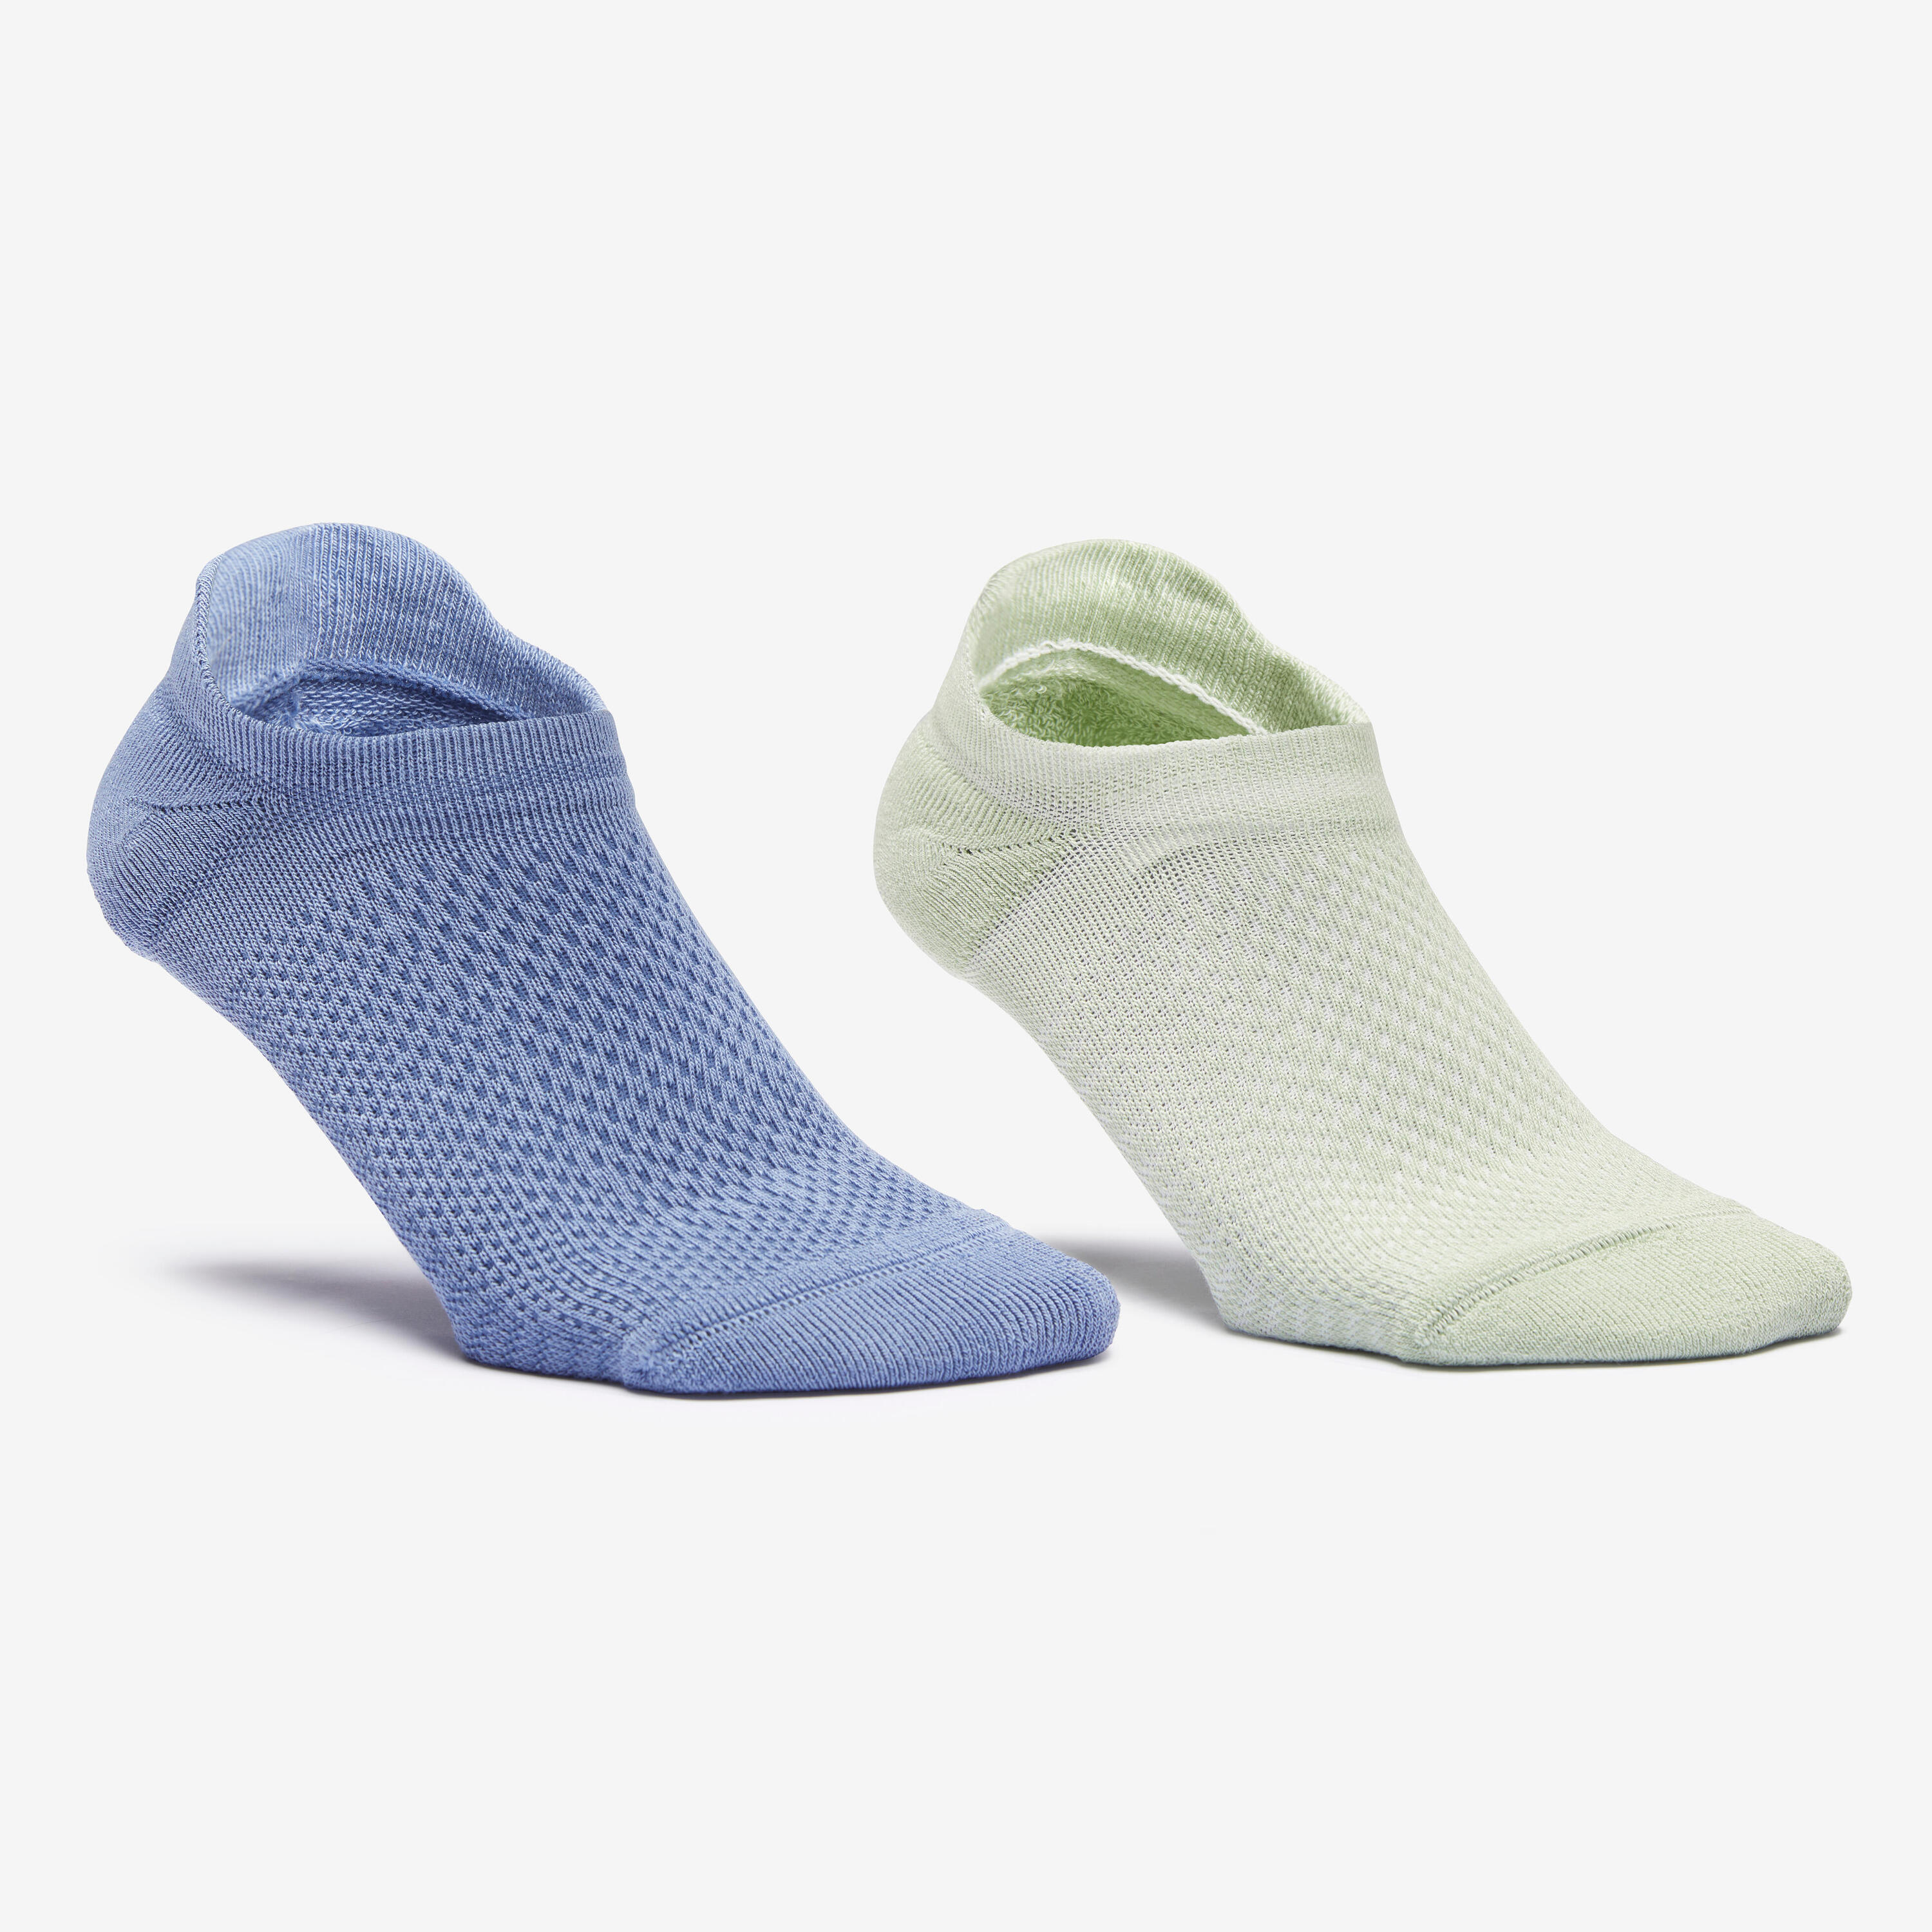 NEWFEEL URBAN WALK Deocell tech ankle socks - pack of 2 - green/blue